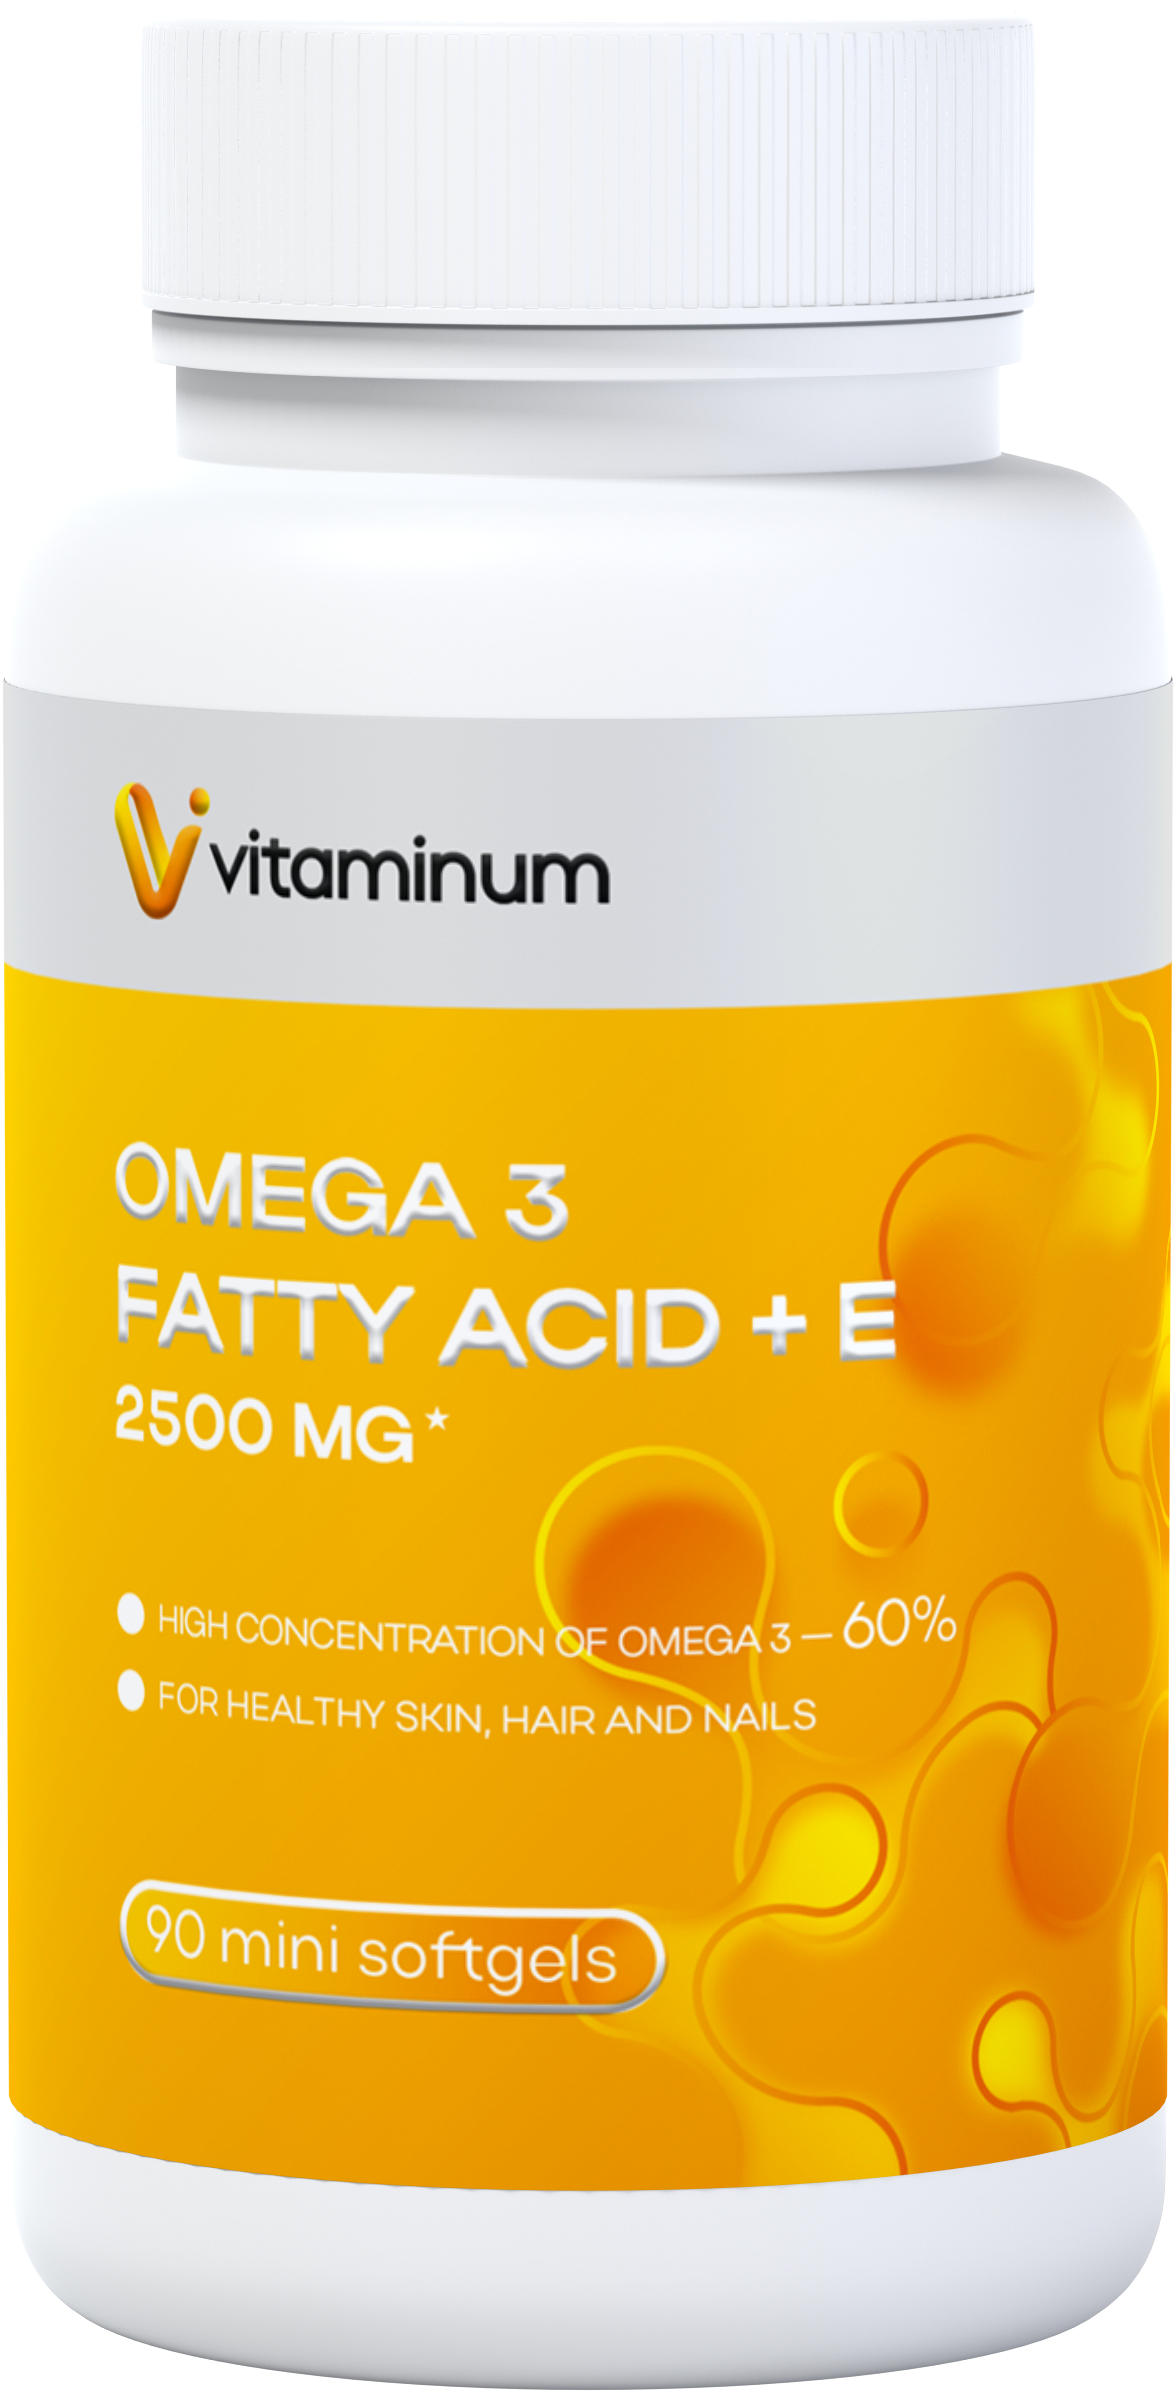  Vitaminum ОМЕГА 3 60% + витамин Е (2500 MG*) 90 капсул 700 мг   в Боровичах